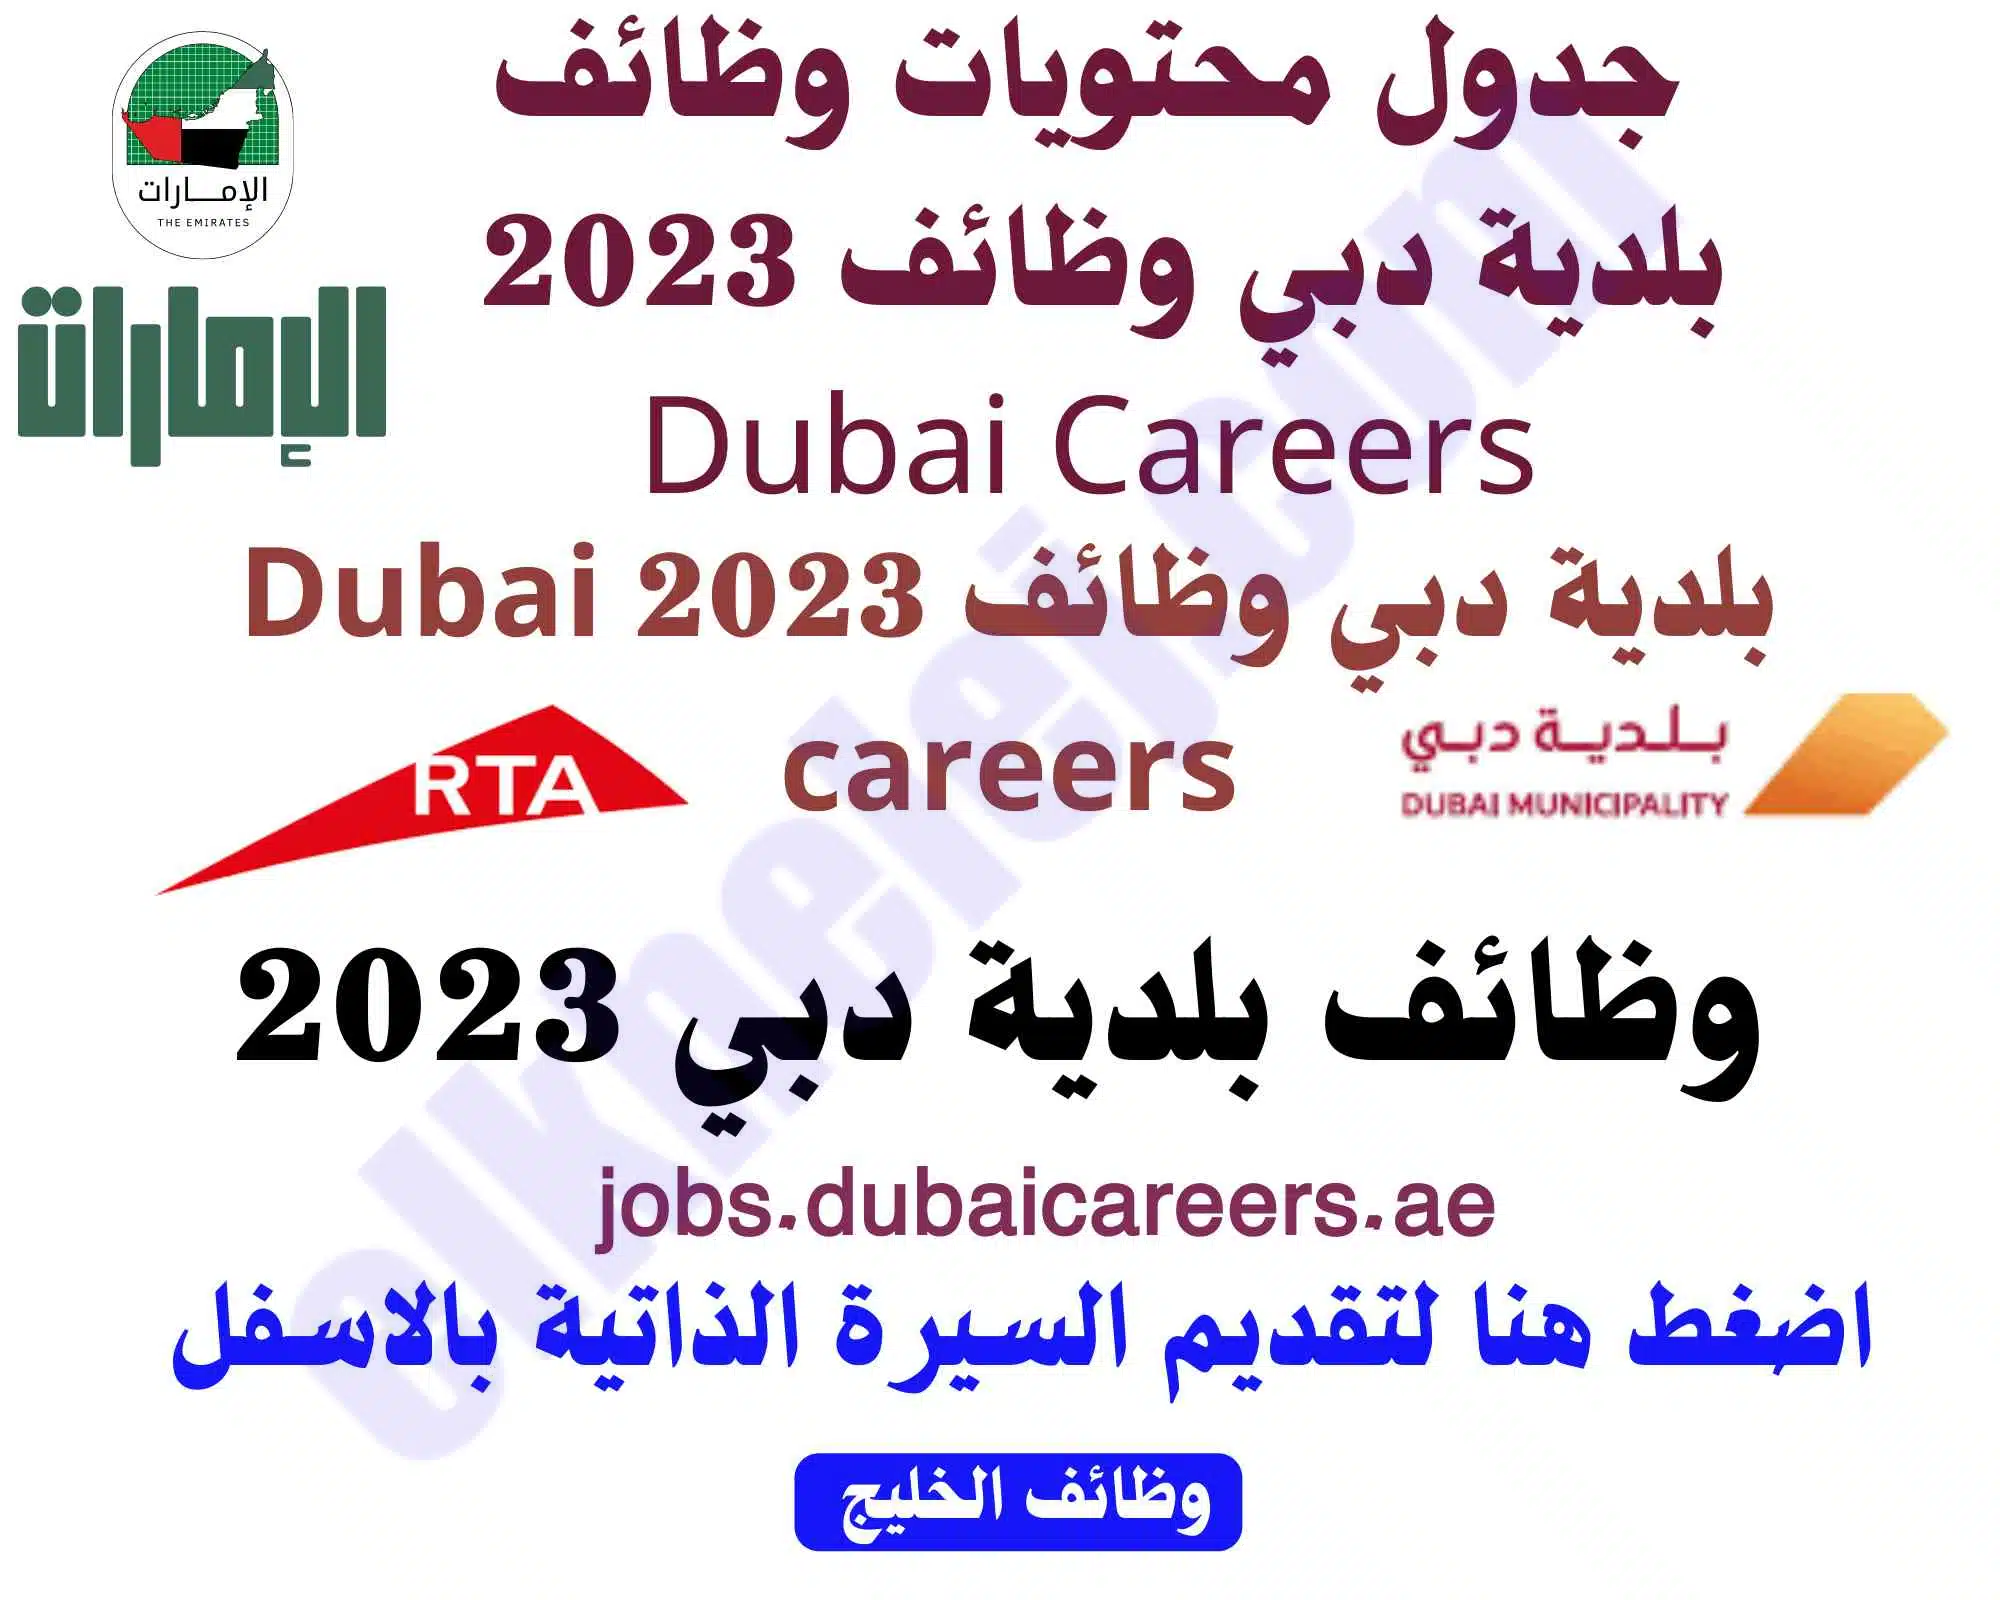 بلدية دبي وظائف 2023 Dubai careers